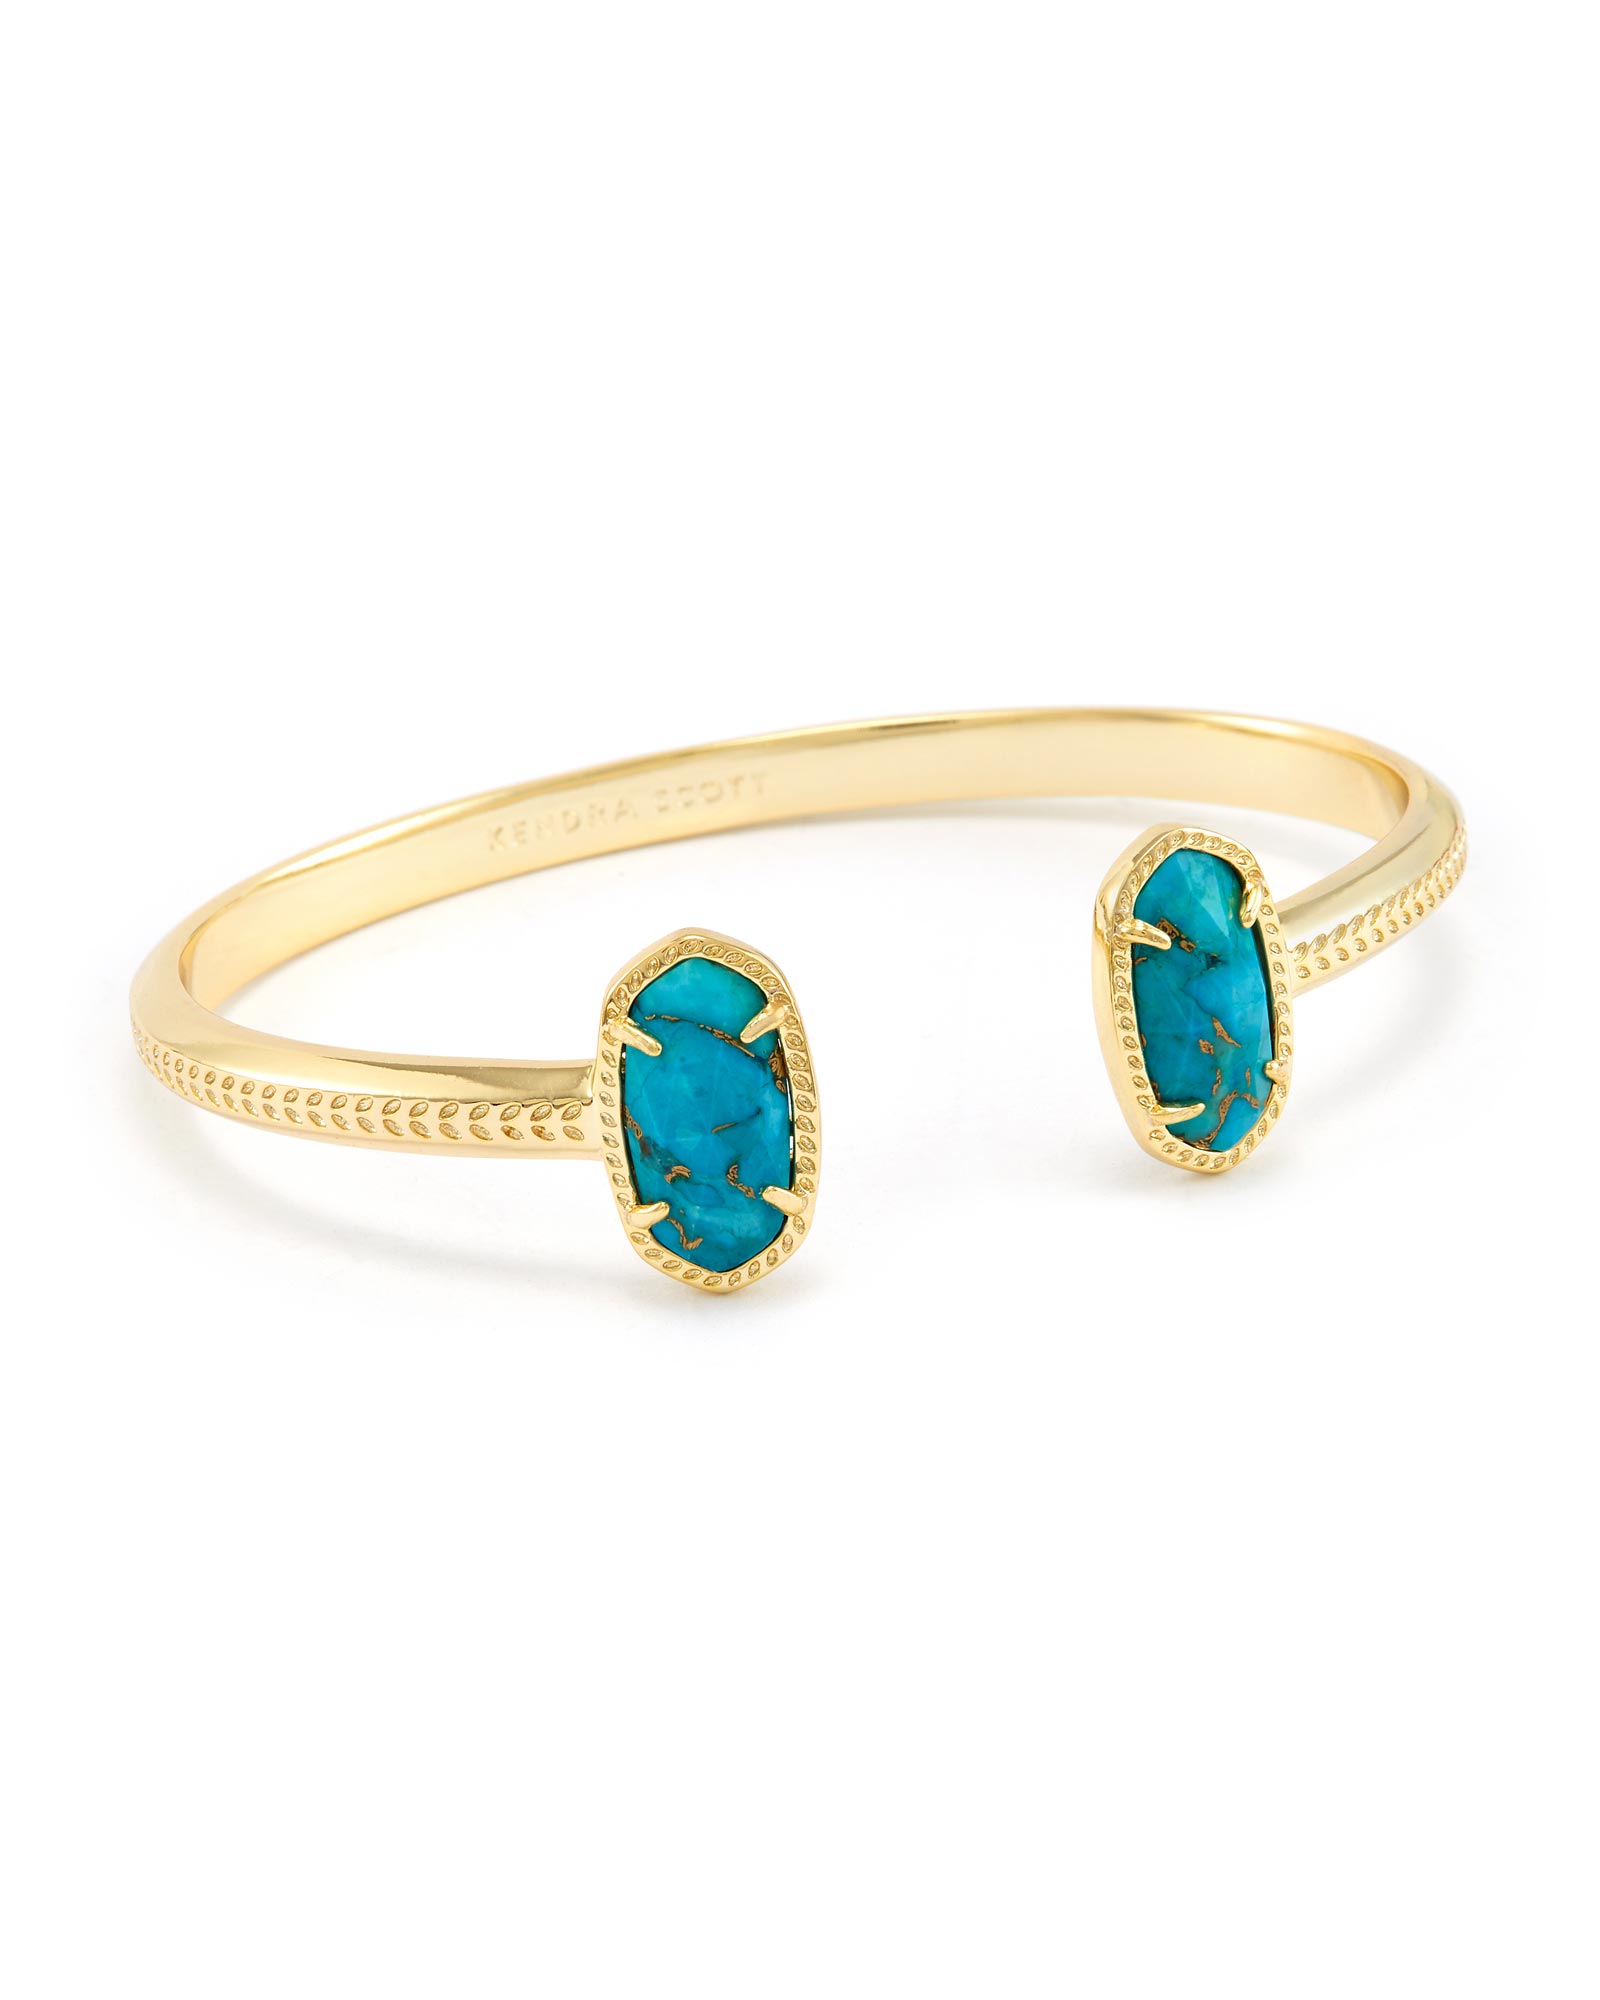 Elton Gold Pinch Cuff Bracelet in Blue Turquoise | Kendra Scott